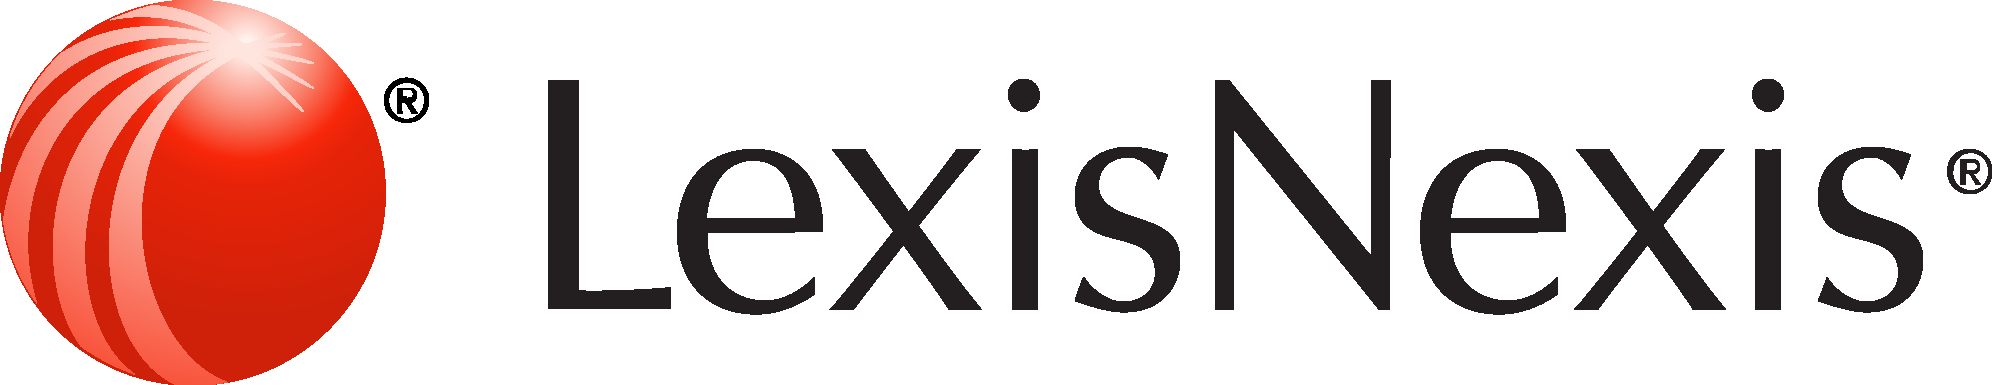 LEXIS-NEXIS